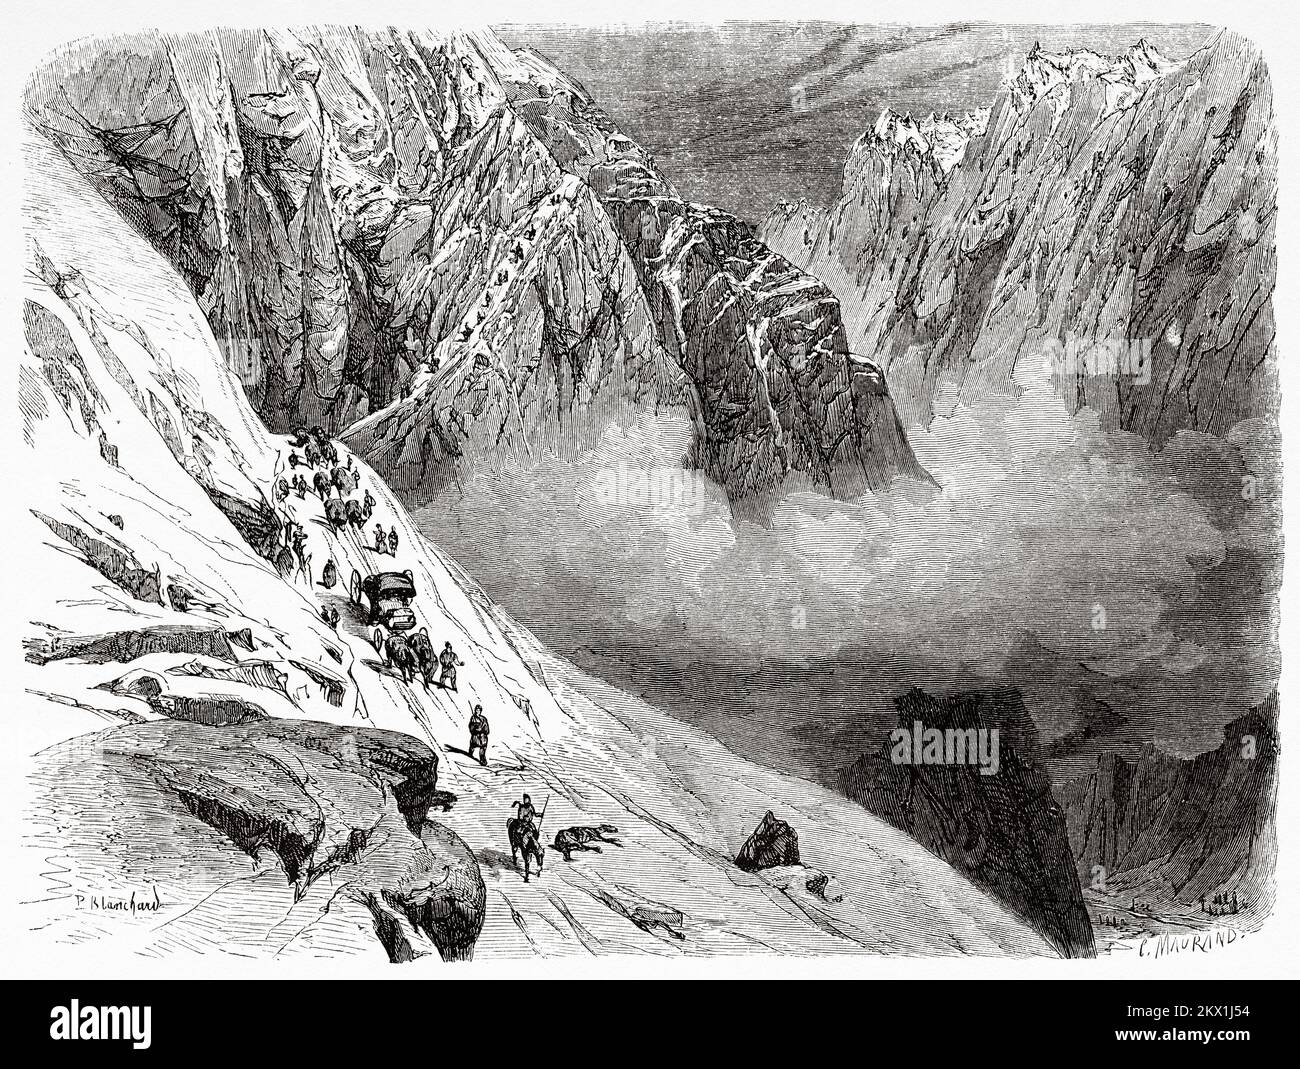 Carretera dura de viajeros entre las altas montañas nevadas en la dolina Certova, Cáucaso ruso. Viaje de Tiflis en Stavropol a la garganta de Dariali, 1858 por Blanchard Foto de stock